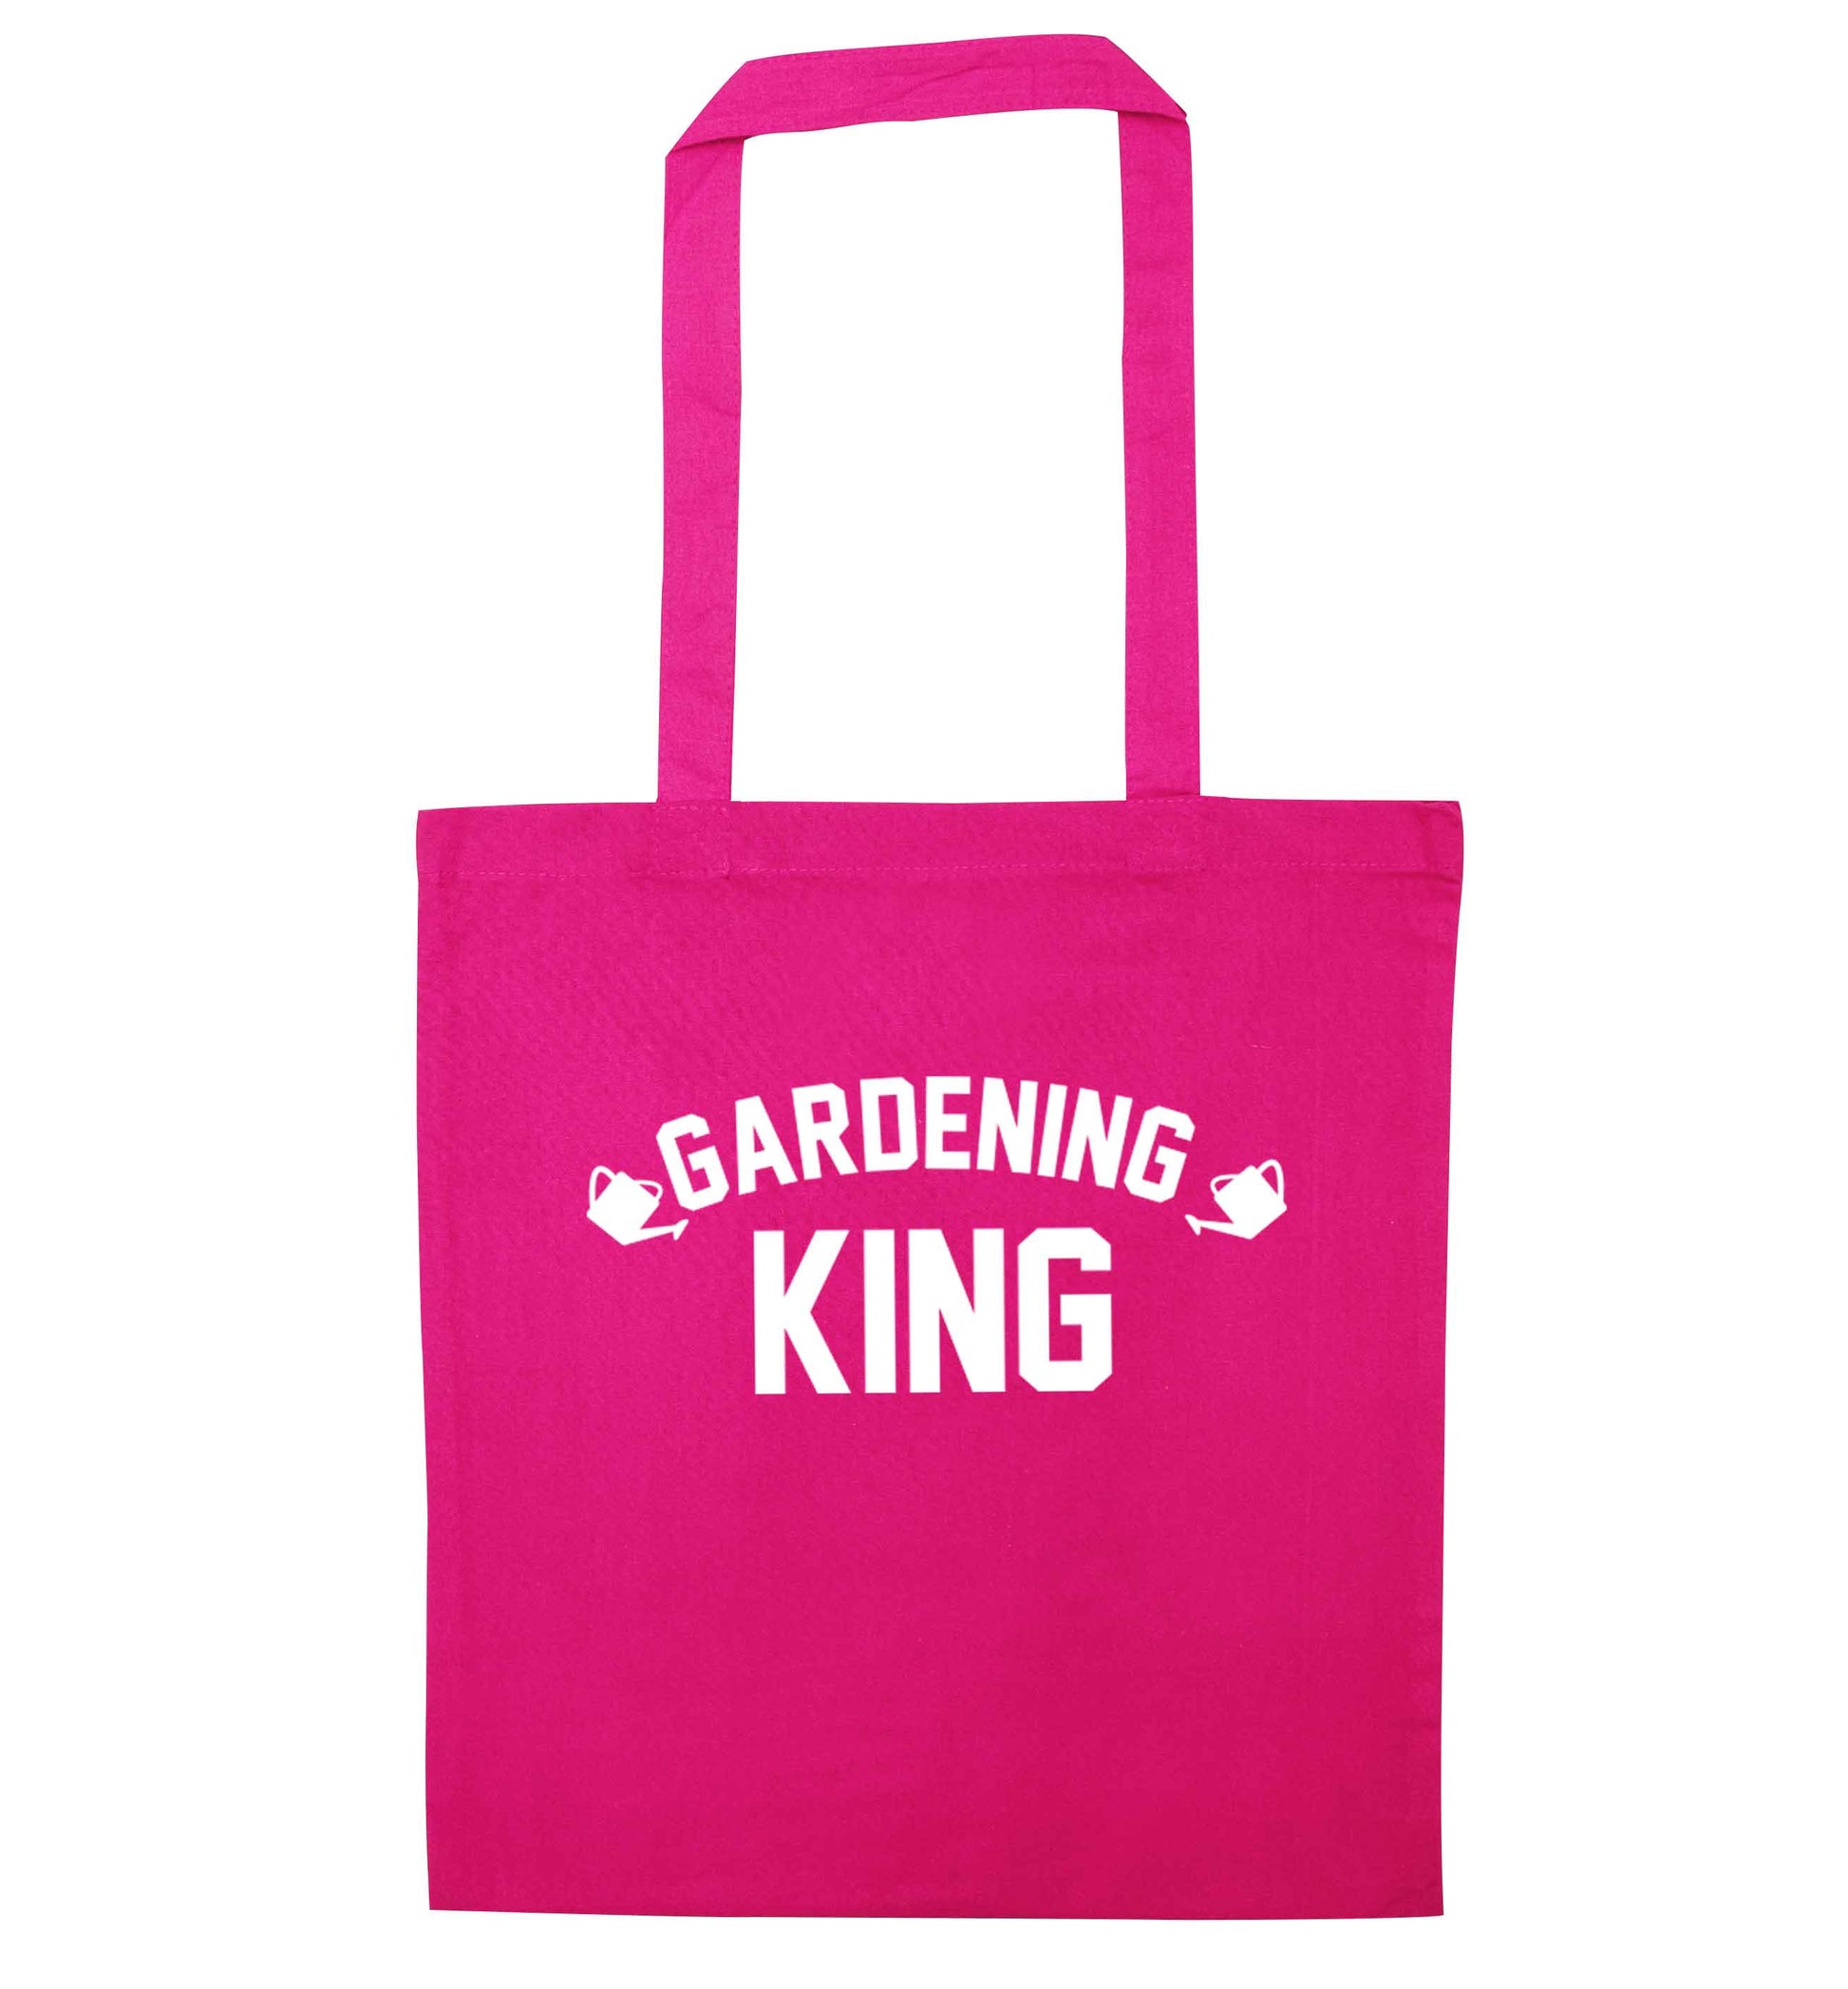 Gardening king pink tote bag